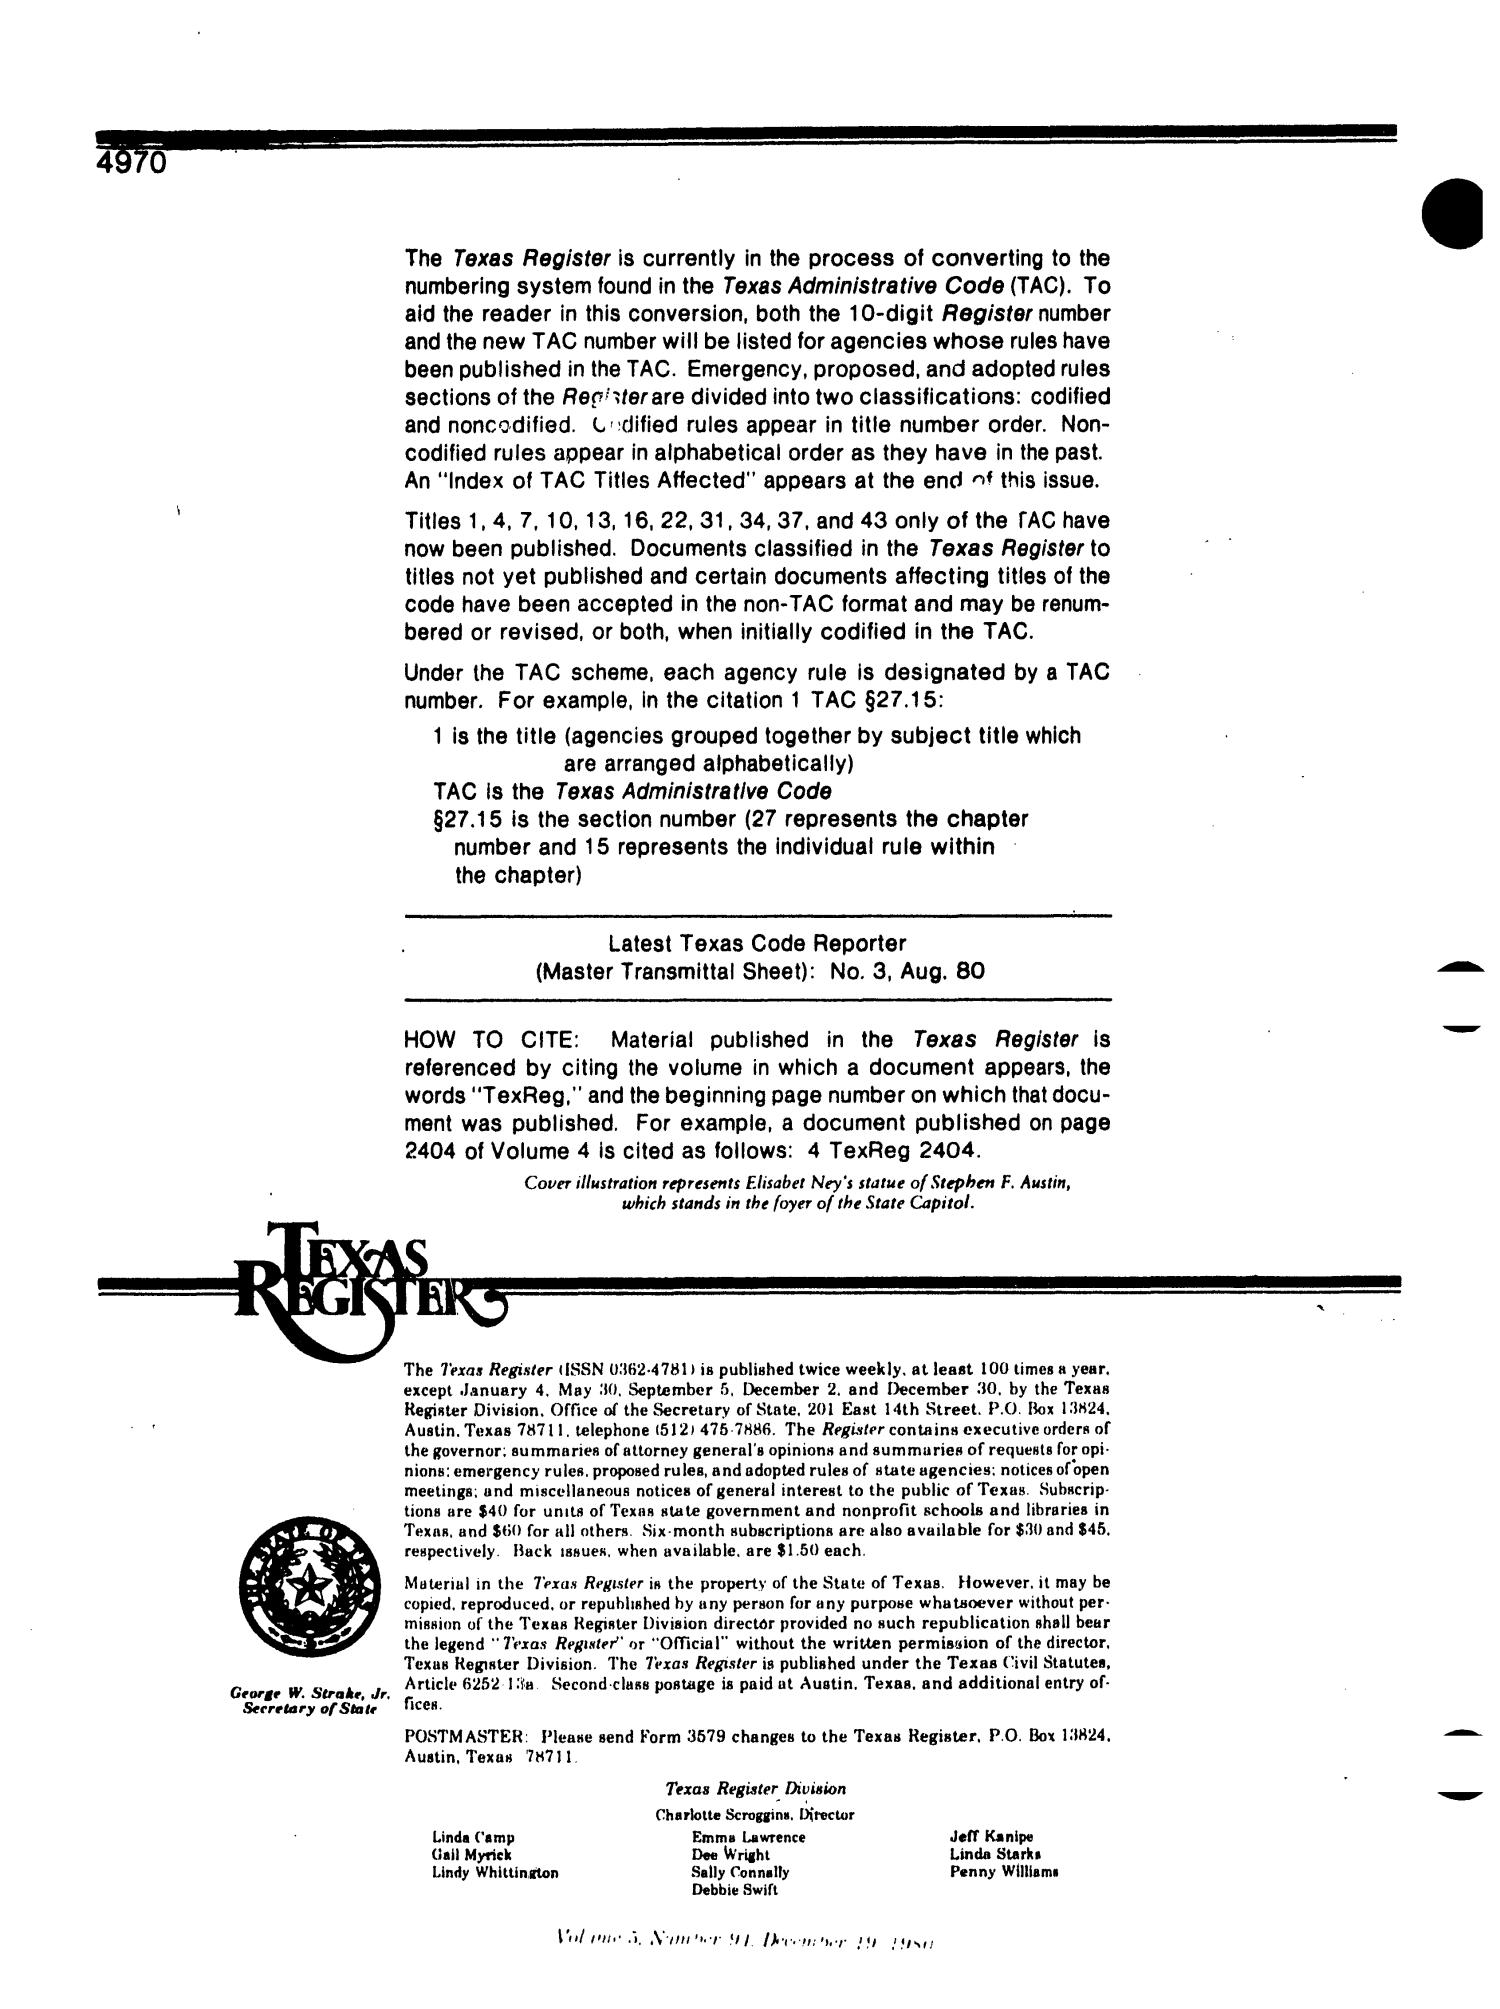 Texas Register, Volume 5, Number 94, Pages 4969-5006, December 19, 1980
                                                
                                                    4970
                                                